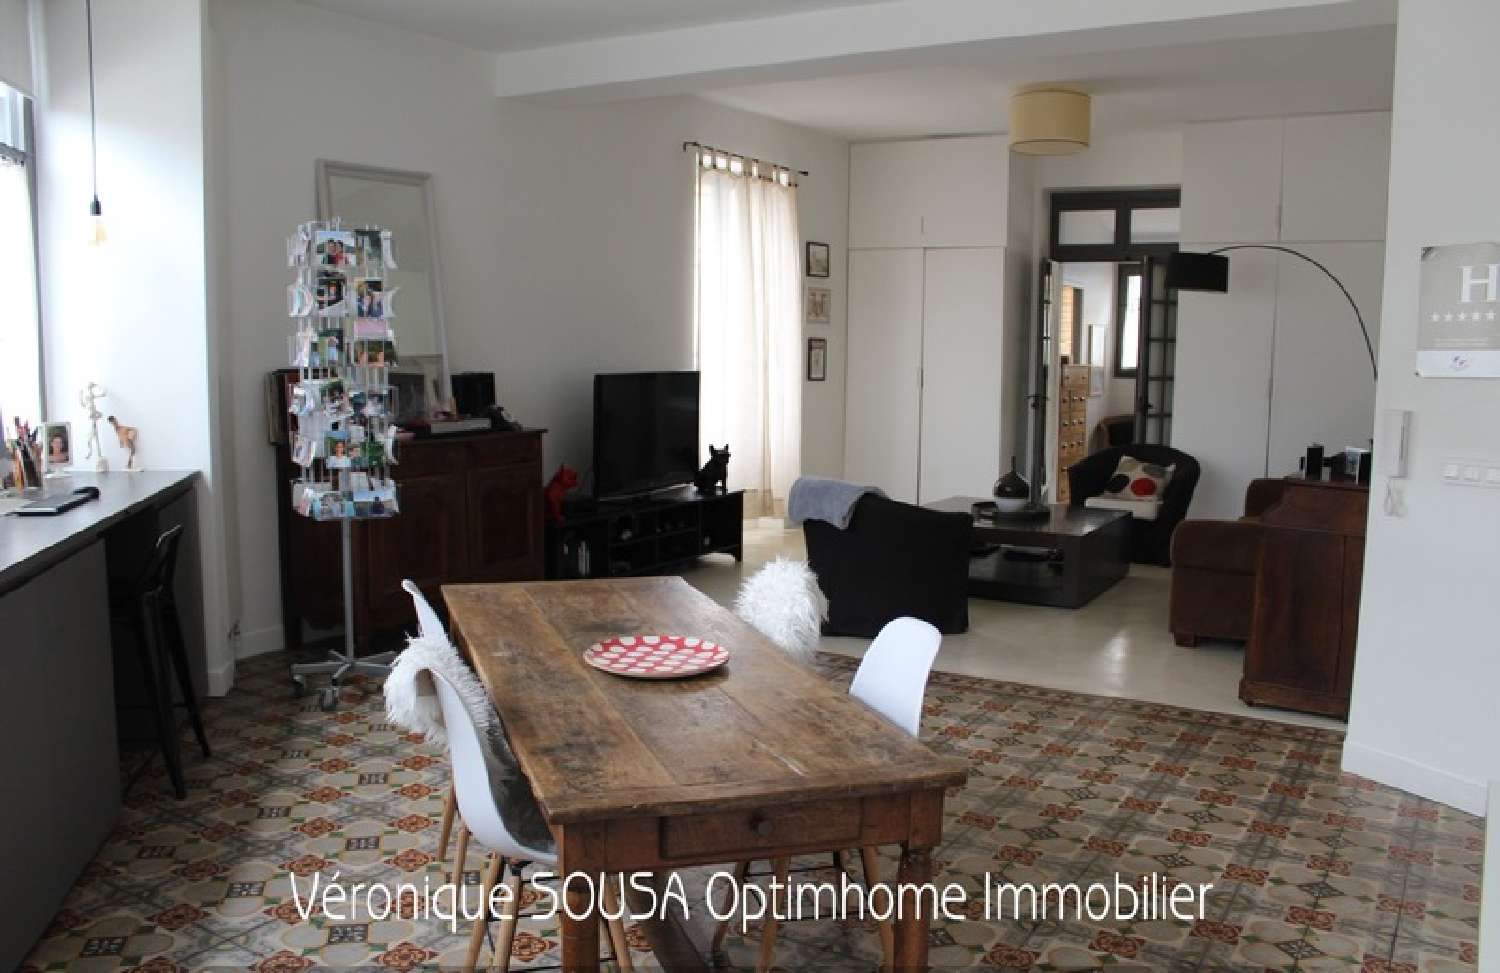  à vendre appartement Saint-Germain-en-Laye Yvelines 6